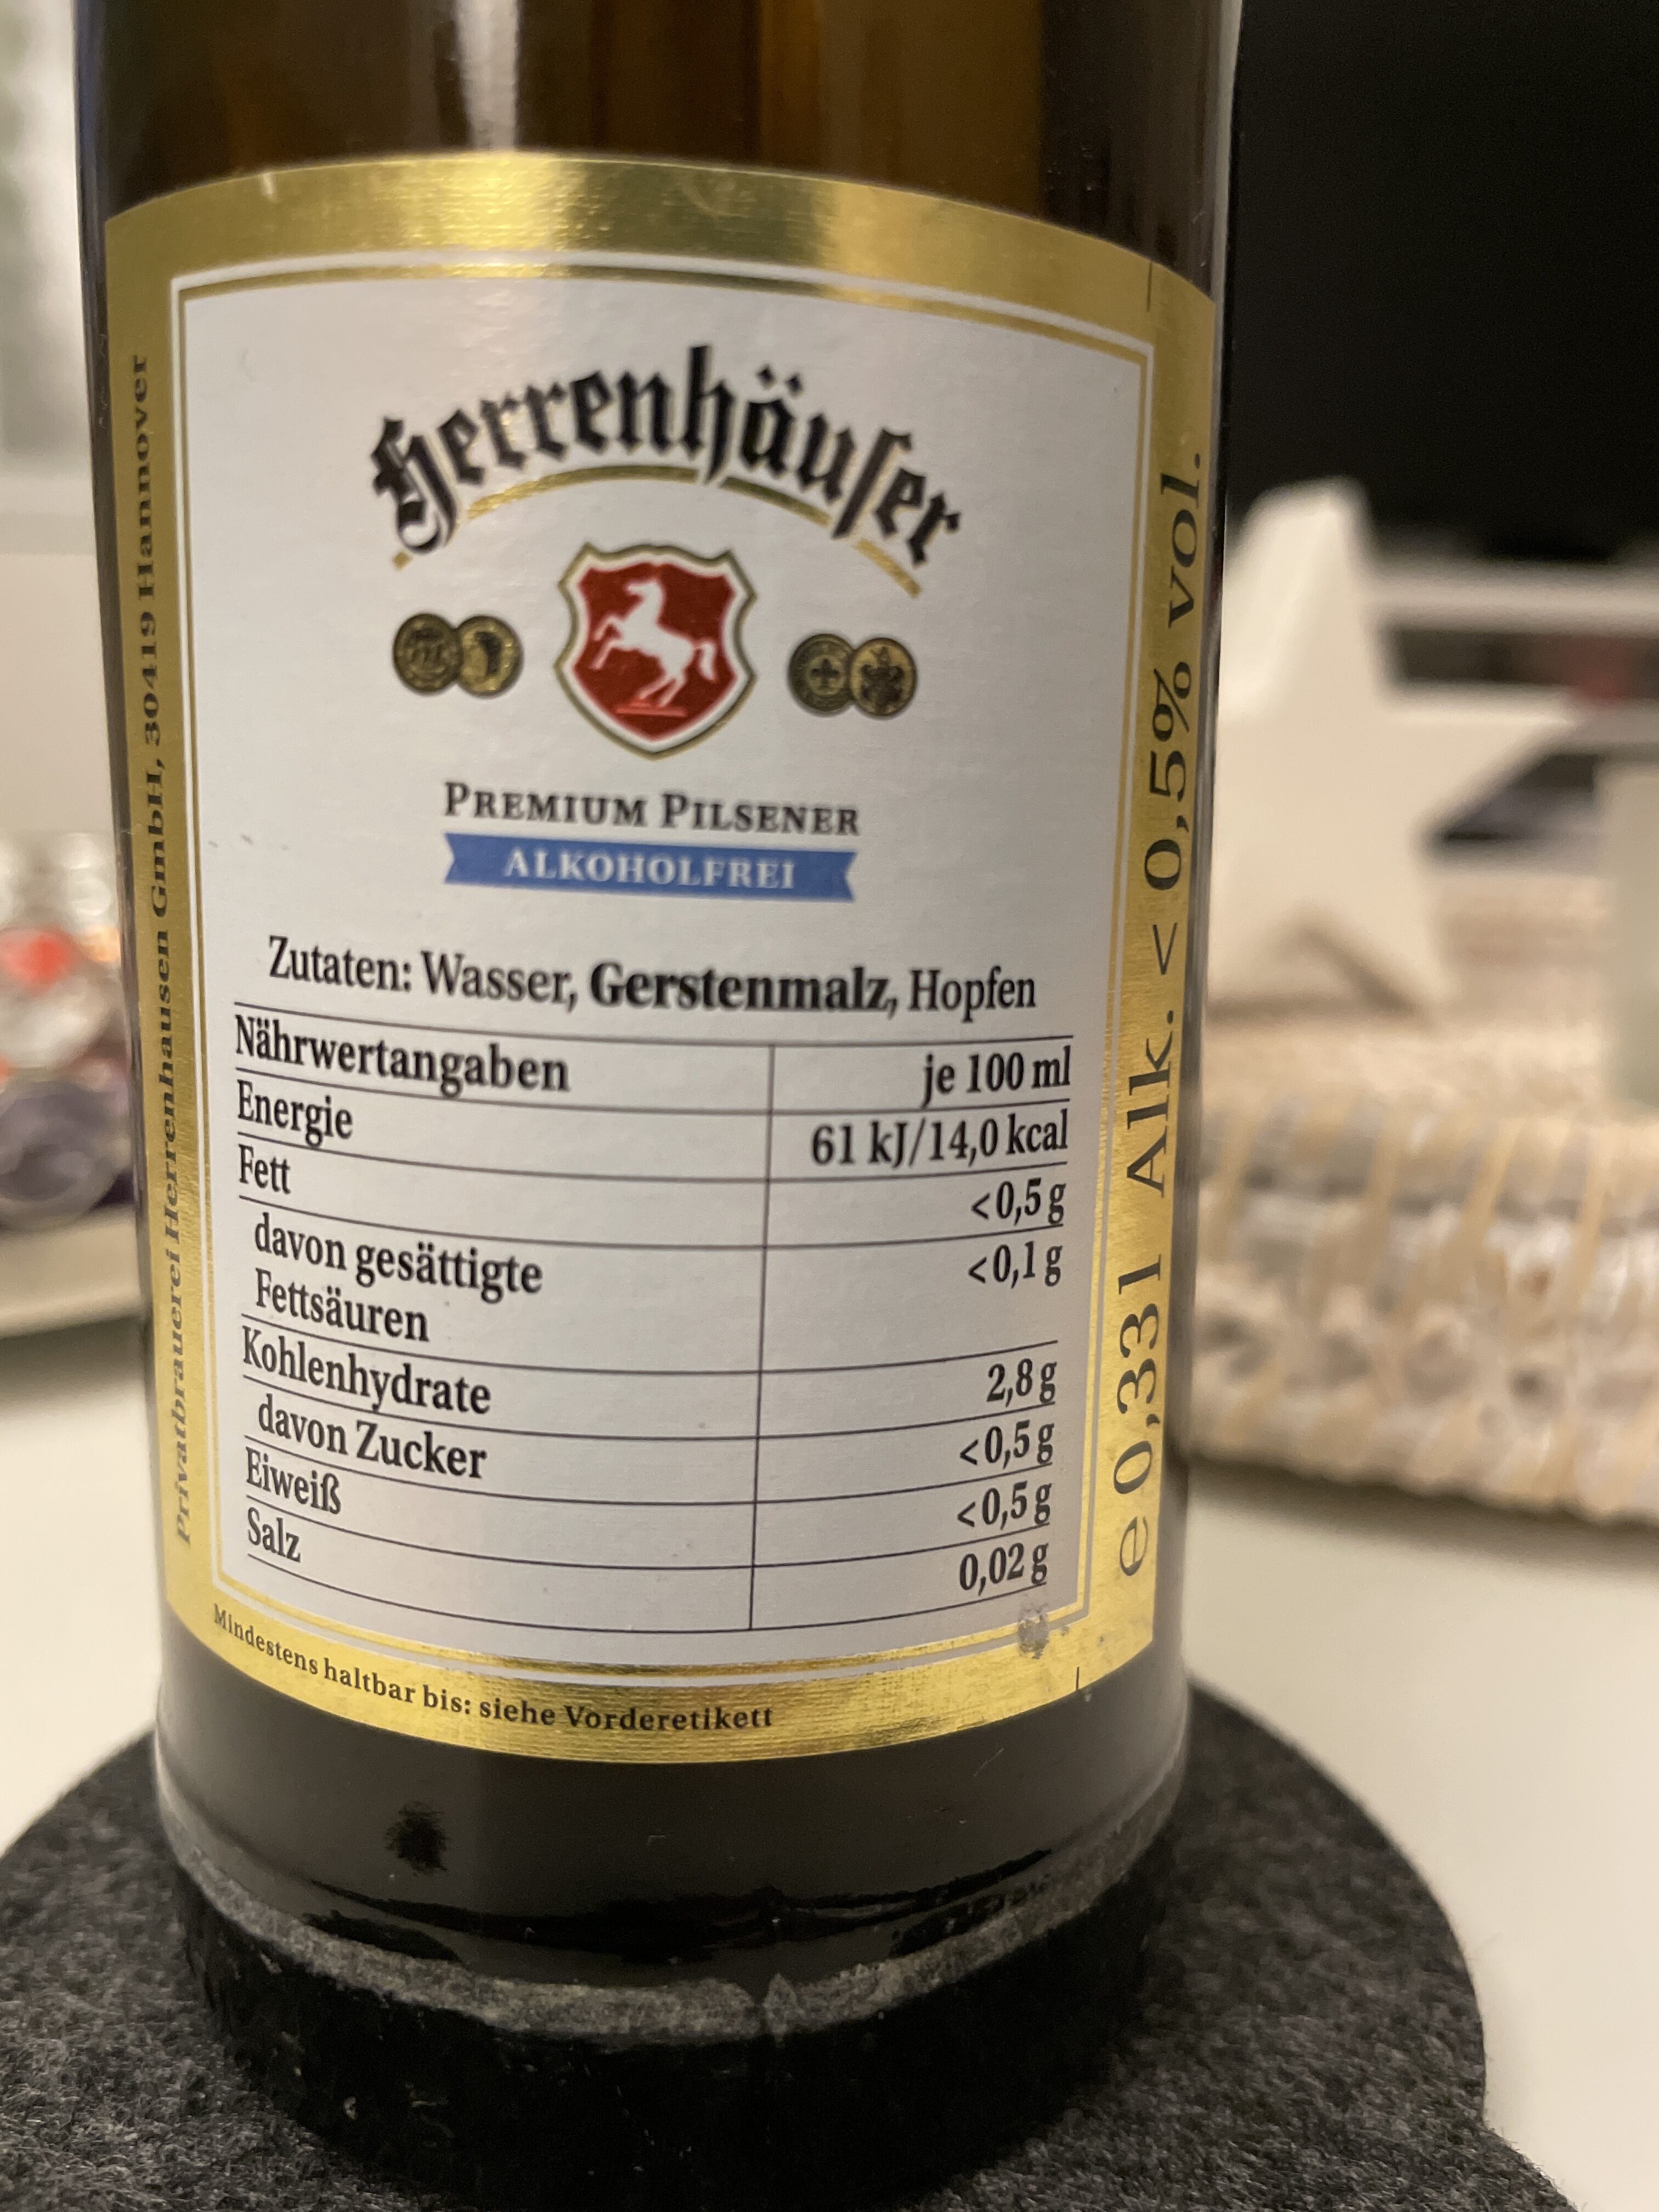 Premium Pilsener Alkoholfrei - Zutaten